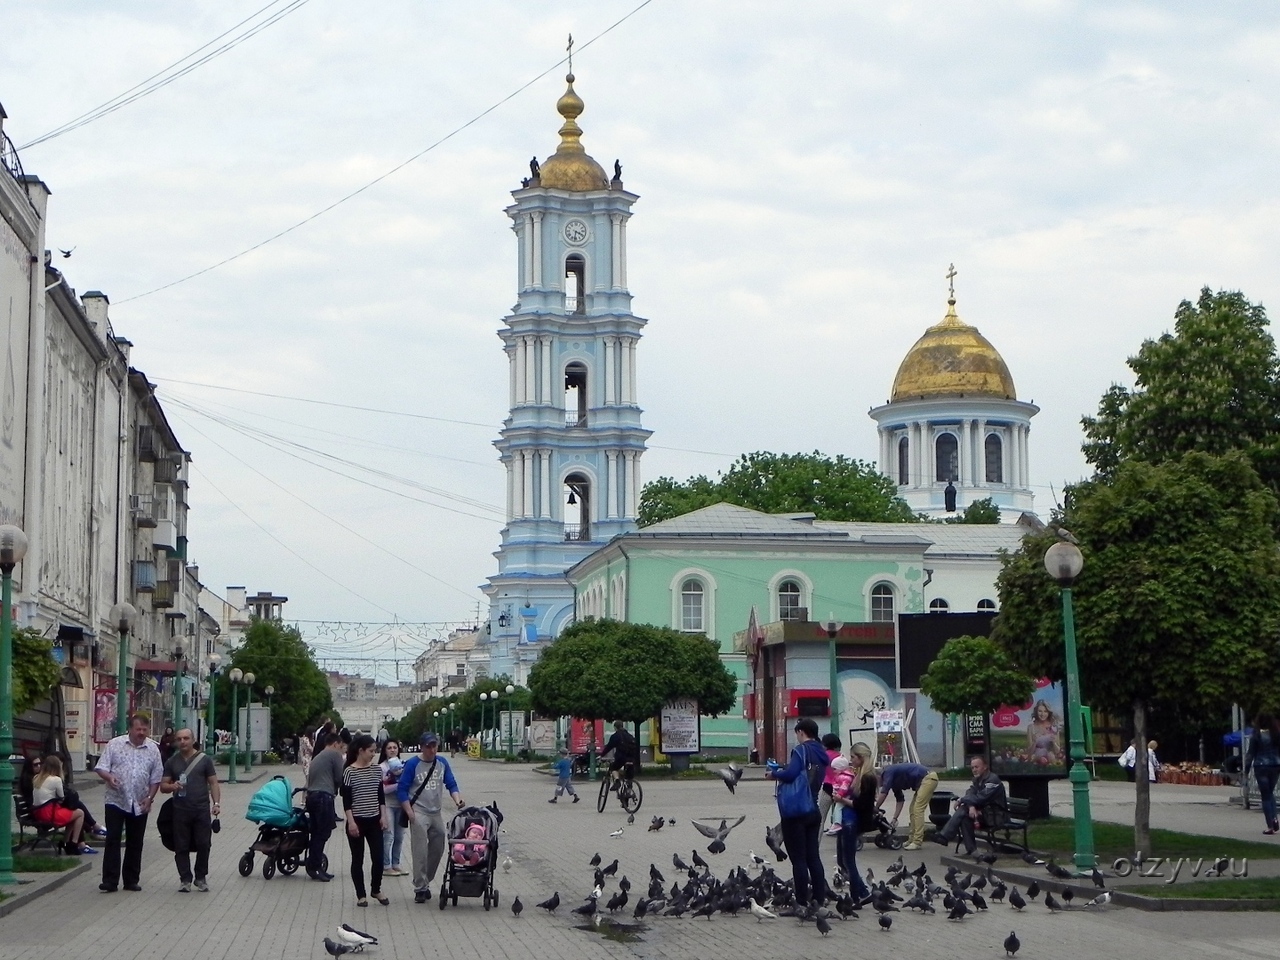 Сума город Украины